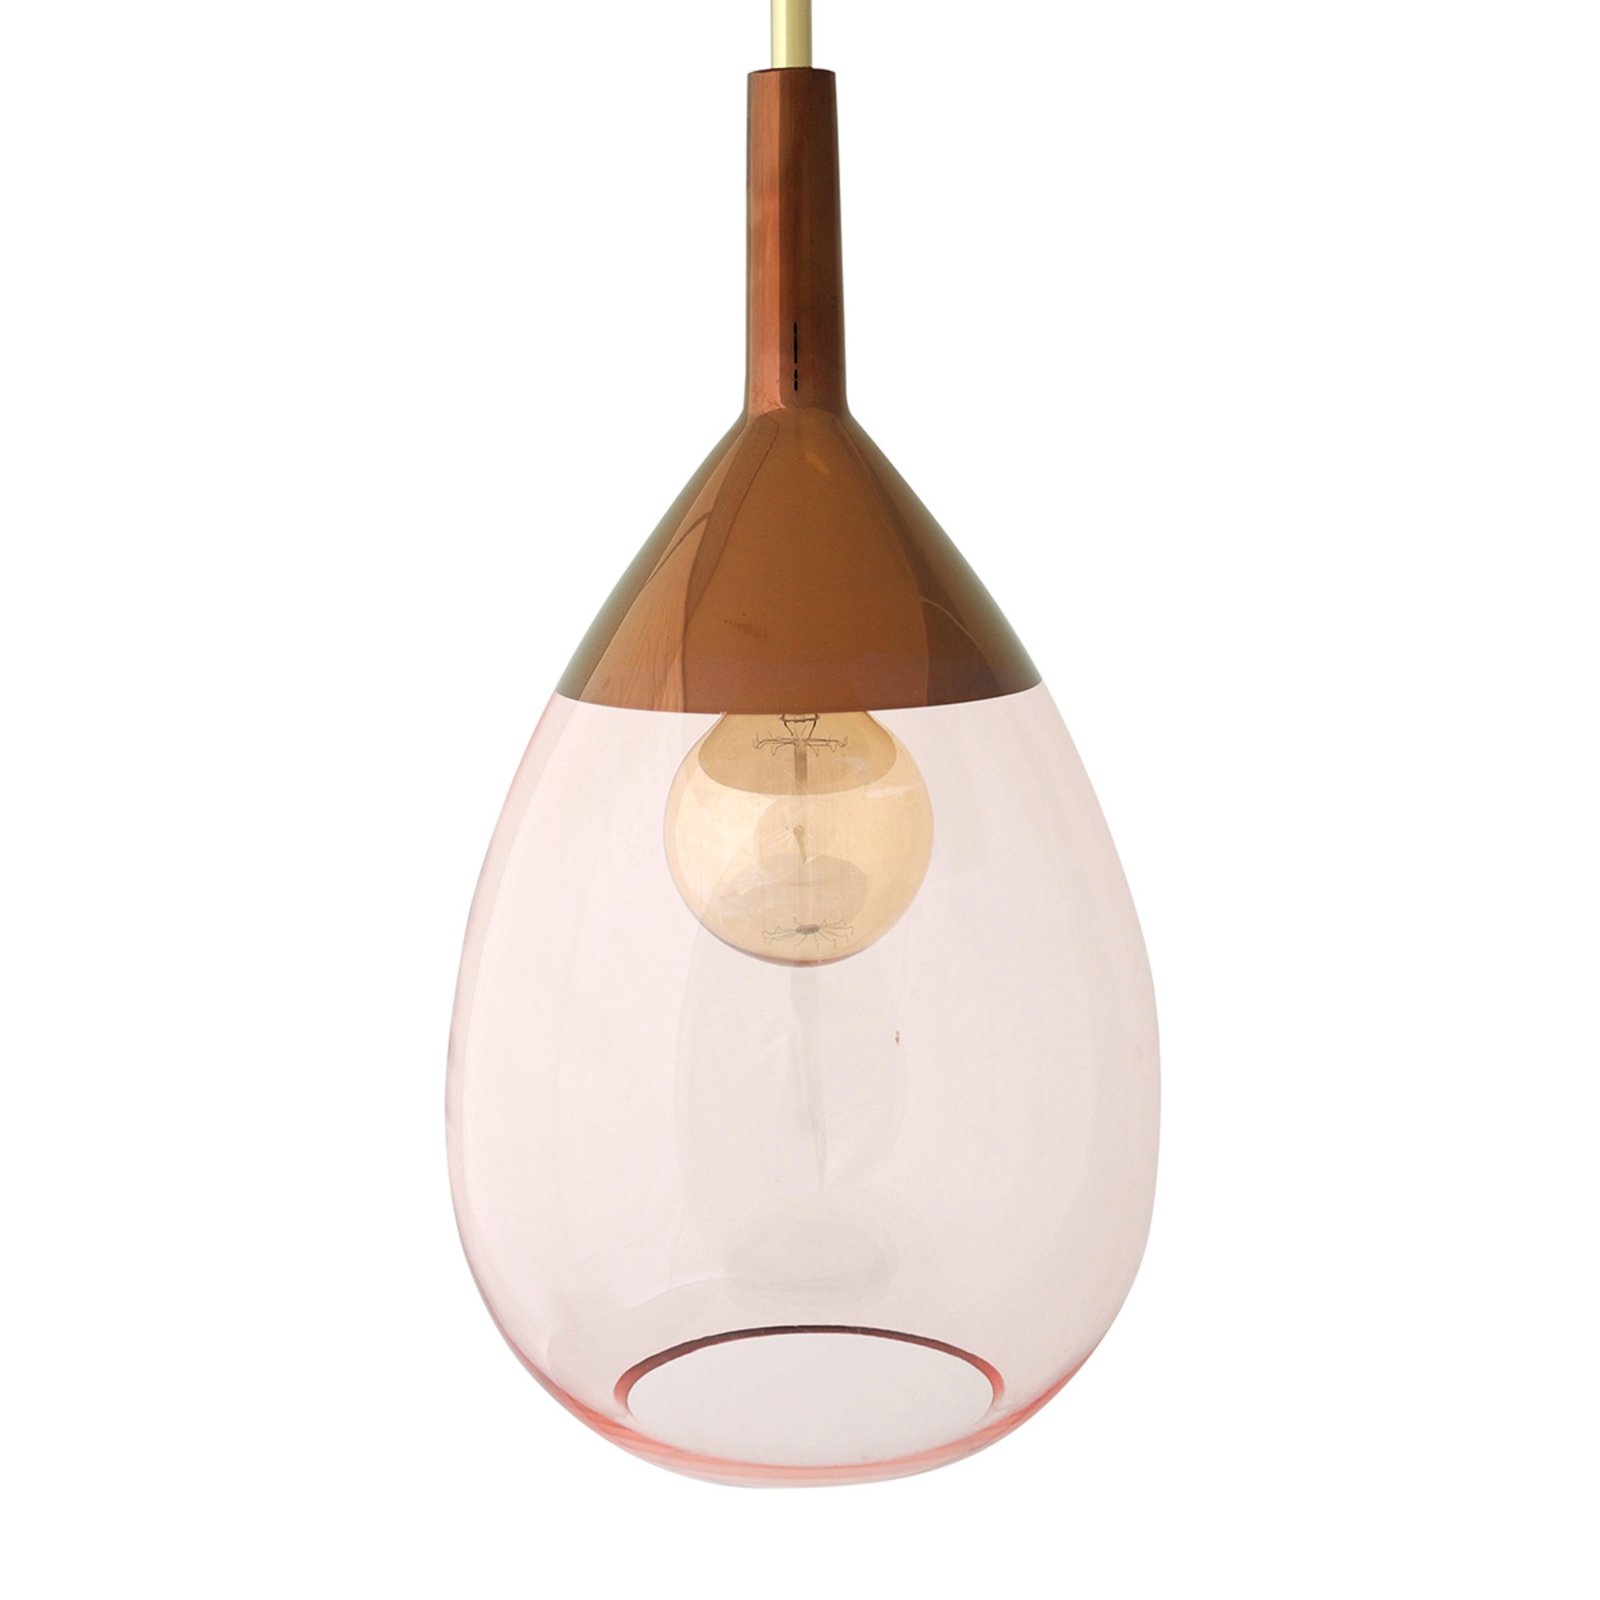 EBB & FLOW Lute glazen hanglamp rosé met koper